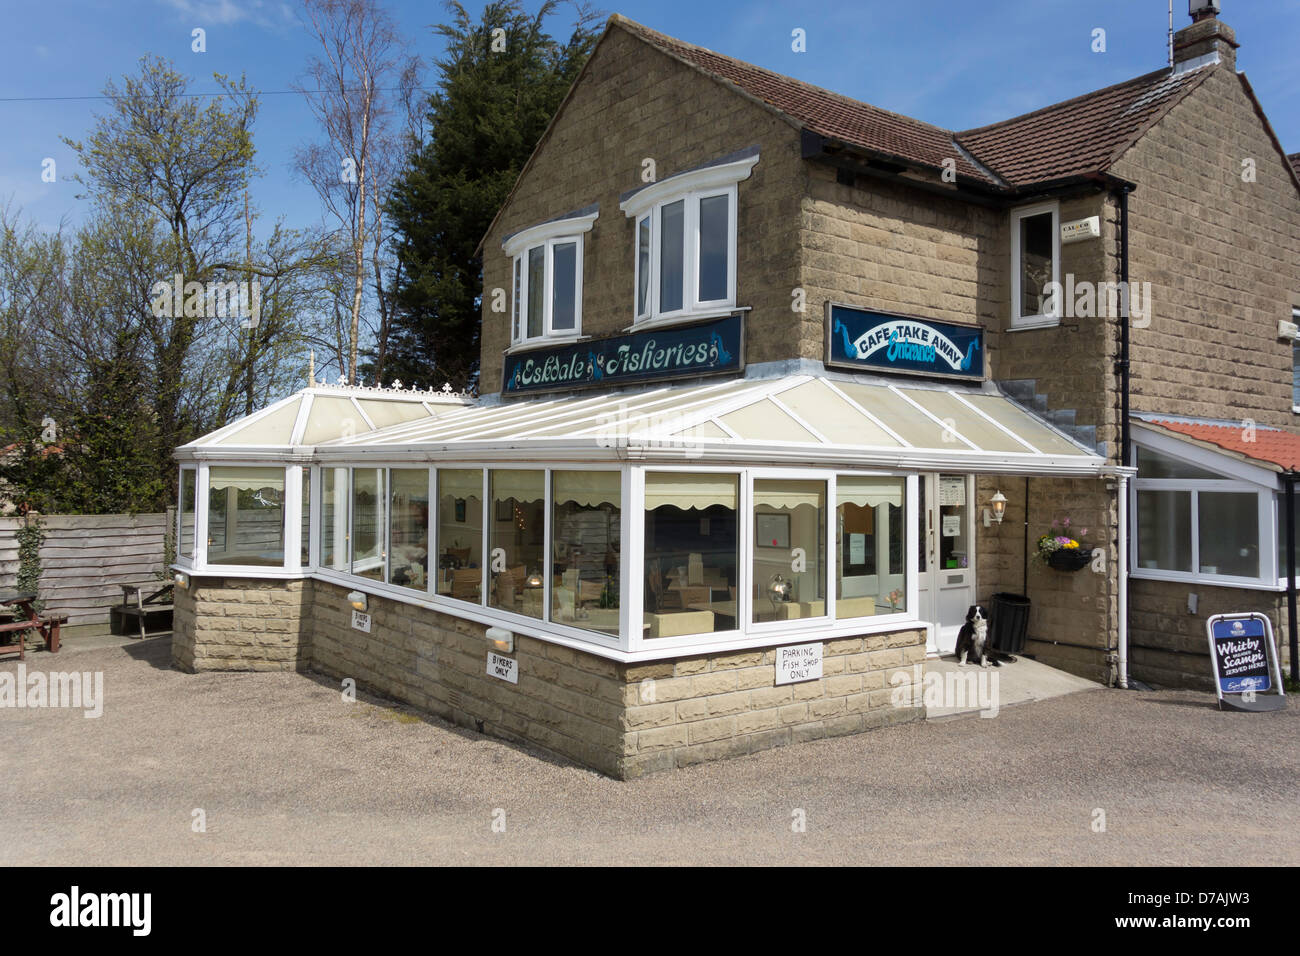 Eskdale Pêches un très bon poisson et Chip shop et restaurant à tours près de Whitby, North Yorkshire Angleterre Banque D'Images